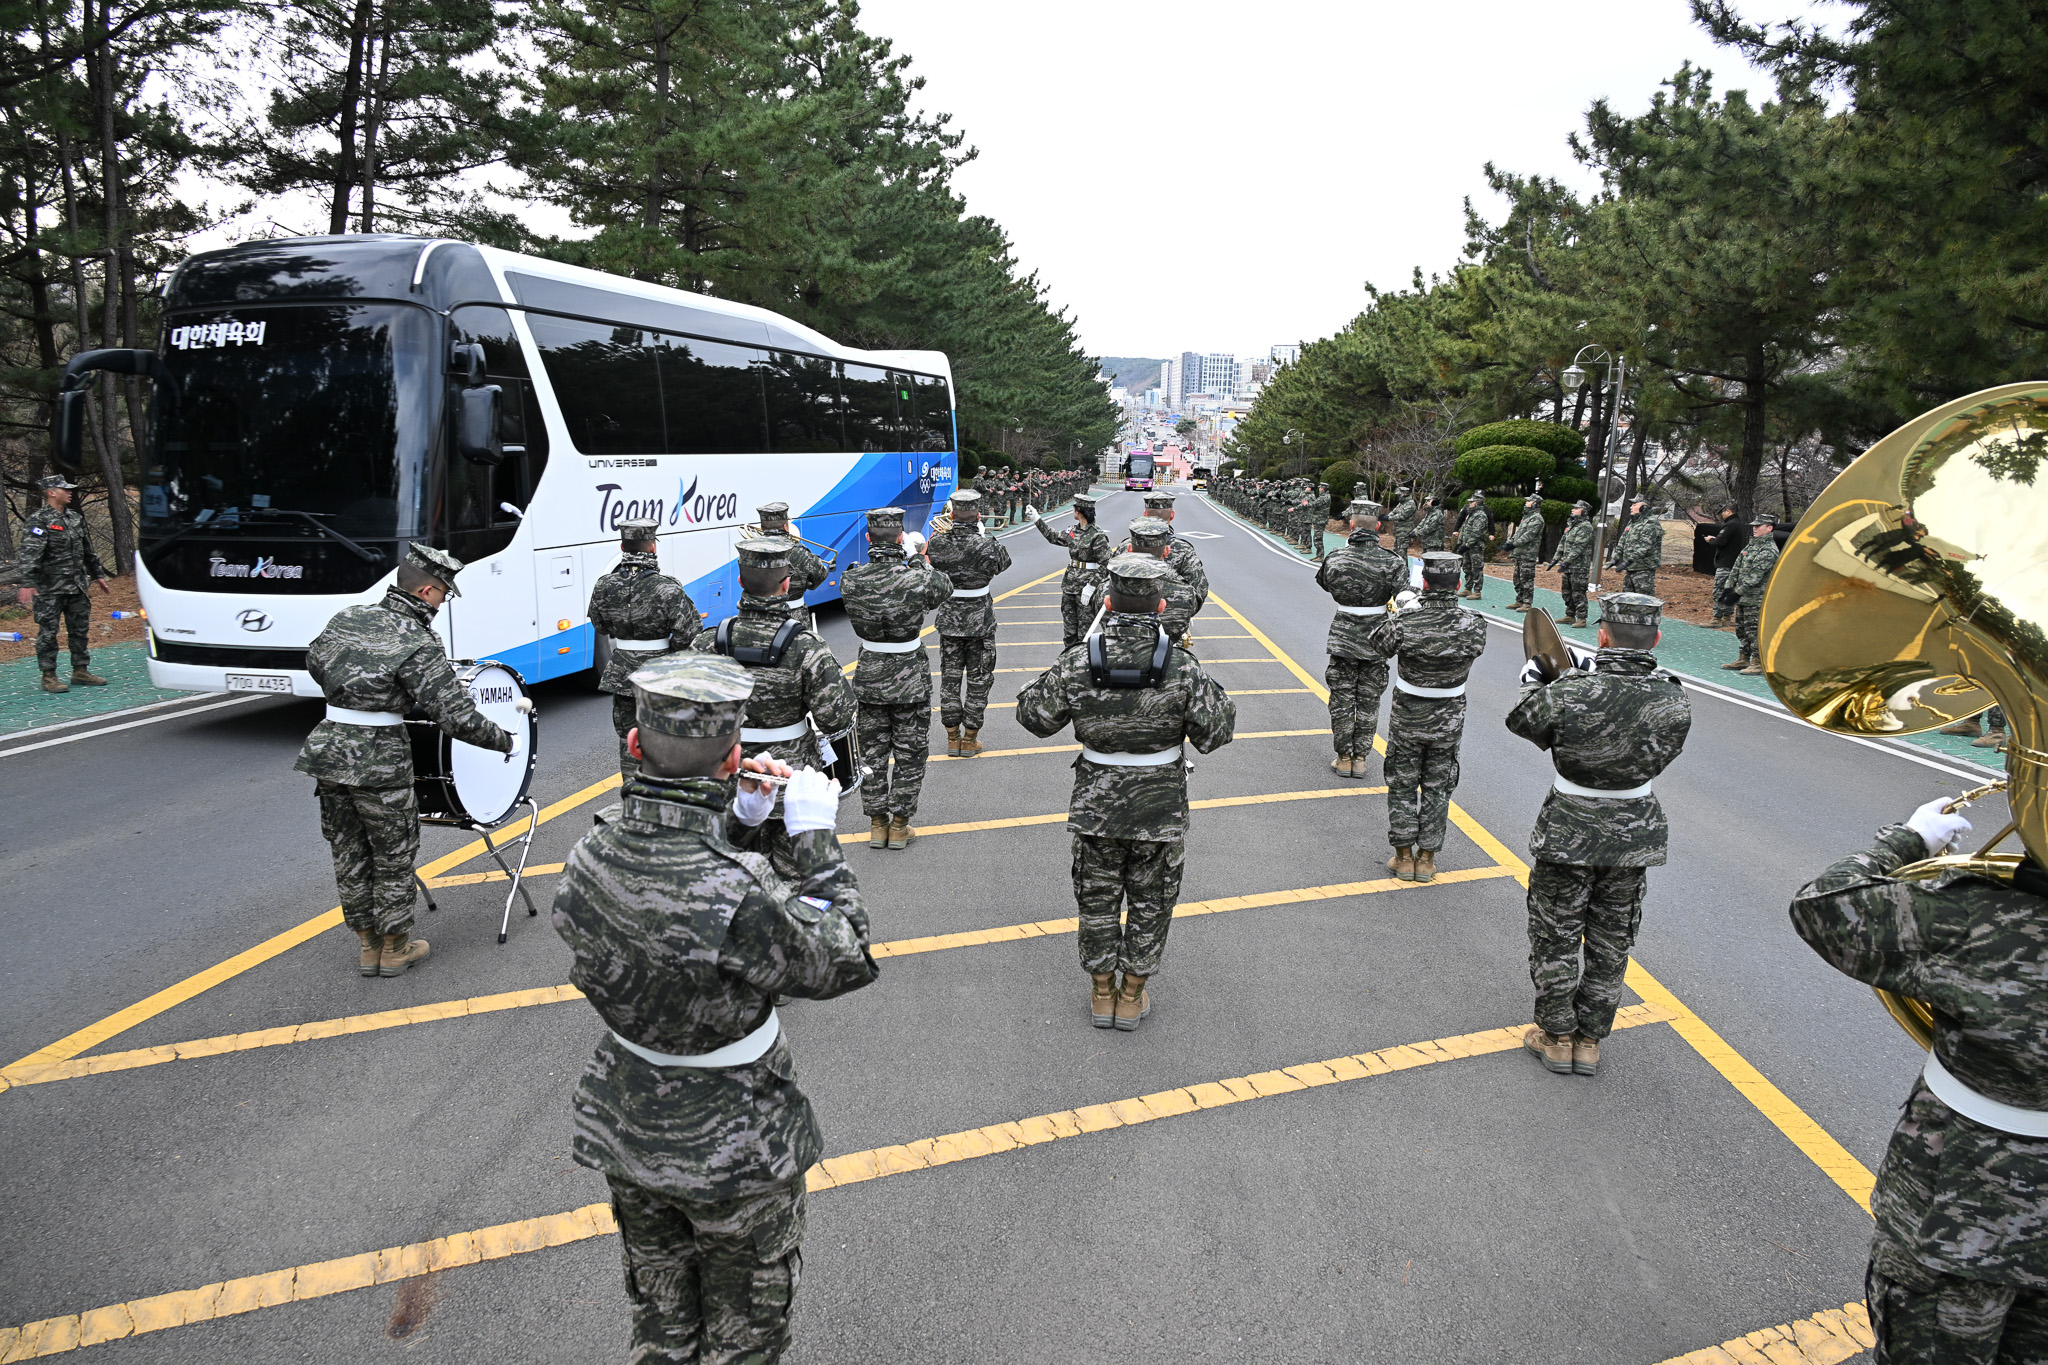 18일 포항 해병대 1사단에서 열린 국가대표 선수단 ‘원 팀 코리아’ 캠프 입소식에 선수단을 태운 버스가 들어서고 있다.  대한체육회 제공